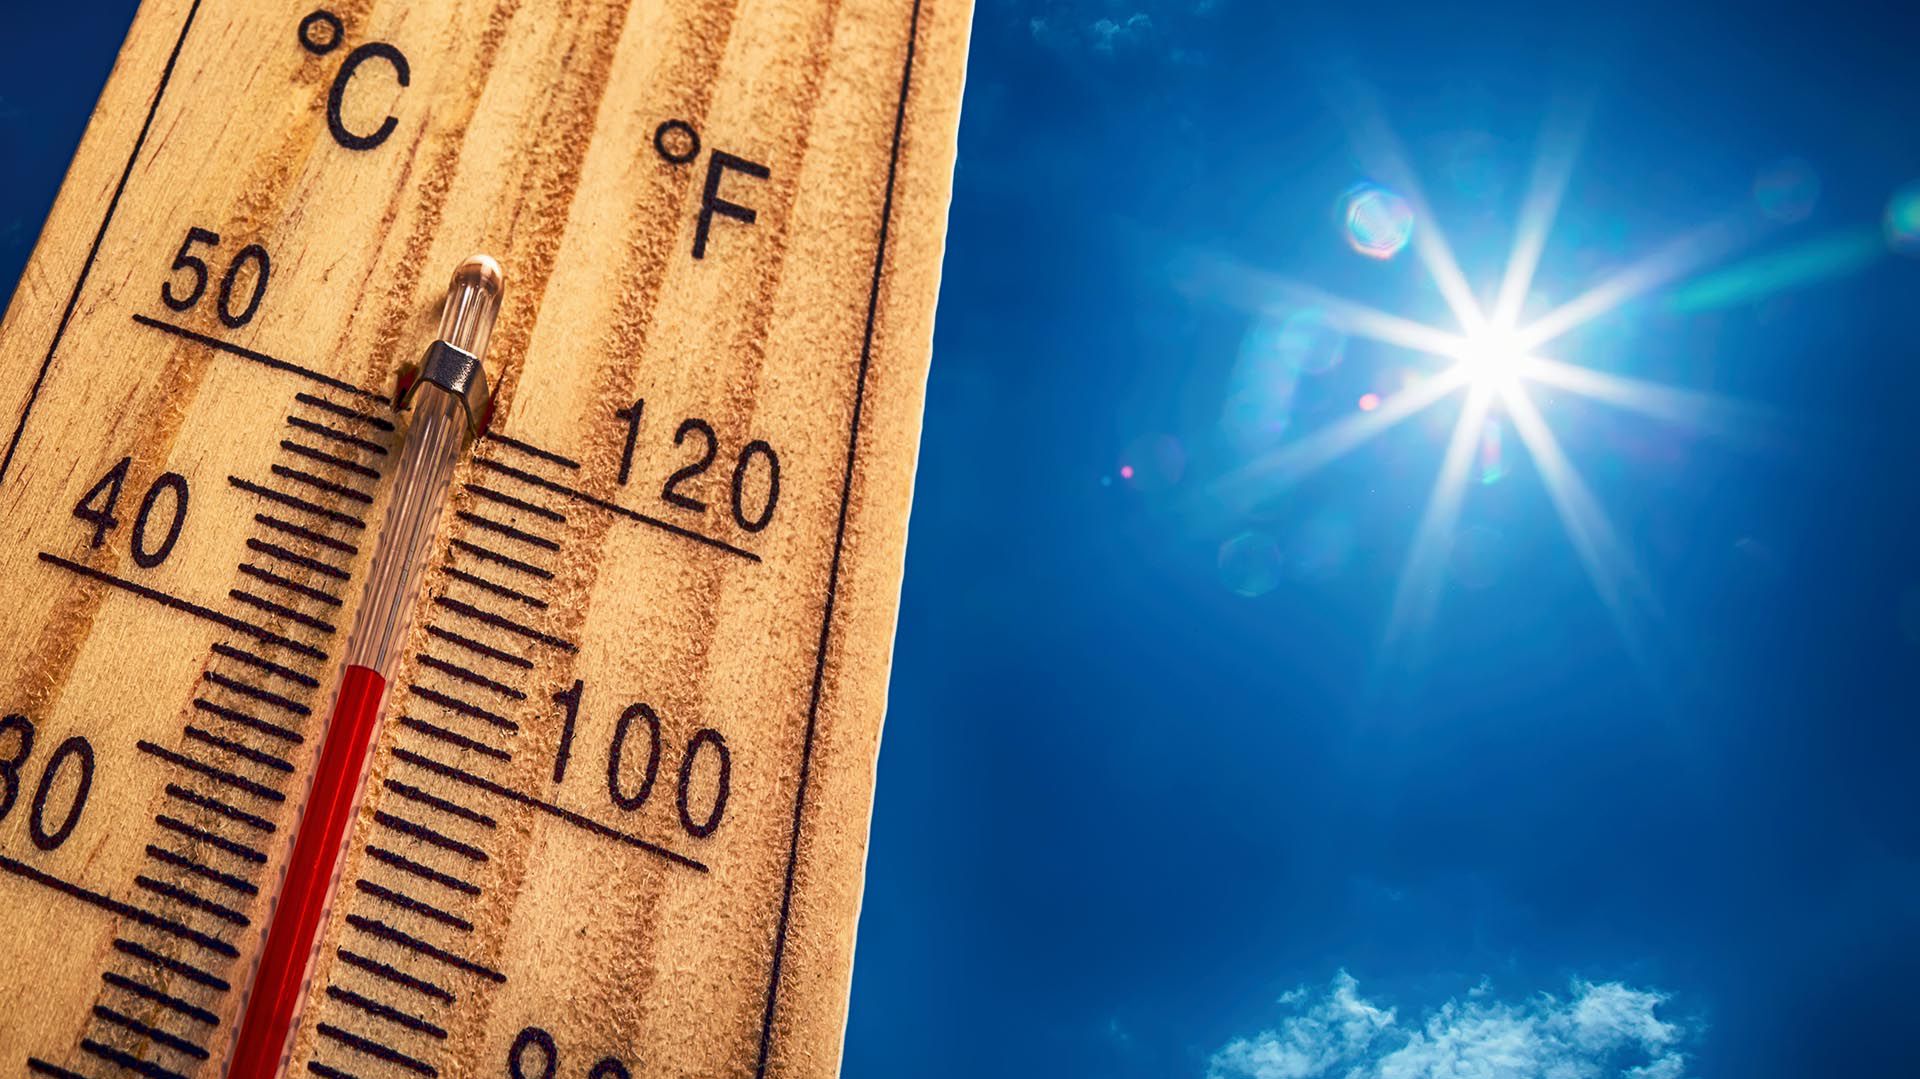 Las altas temperaturas son un riesgo para la salud (Getty Images)